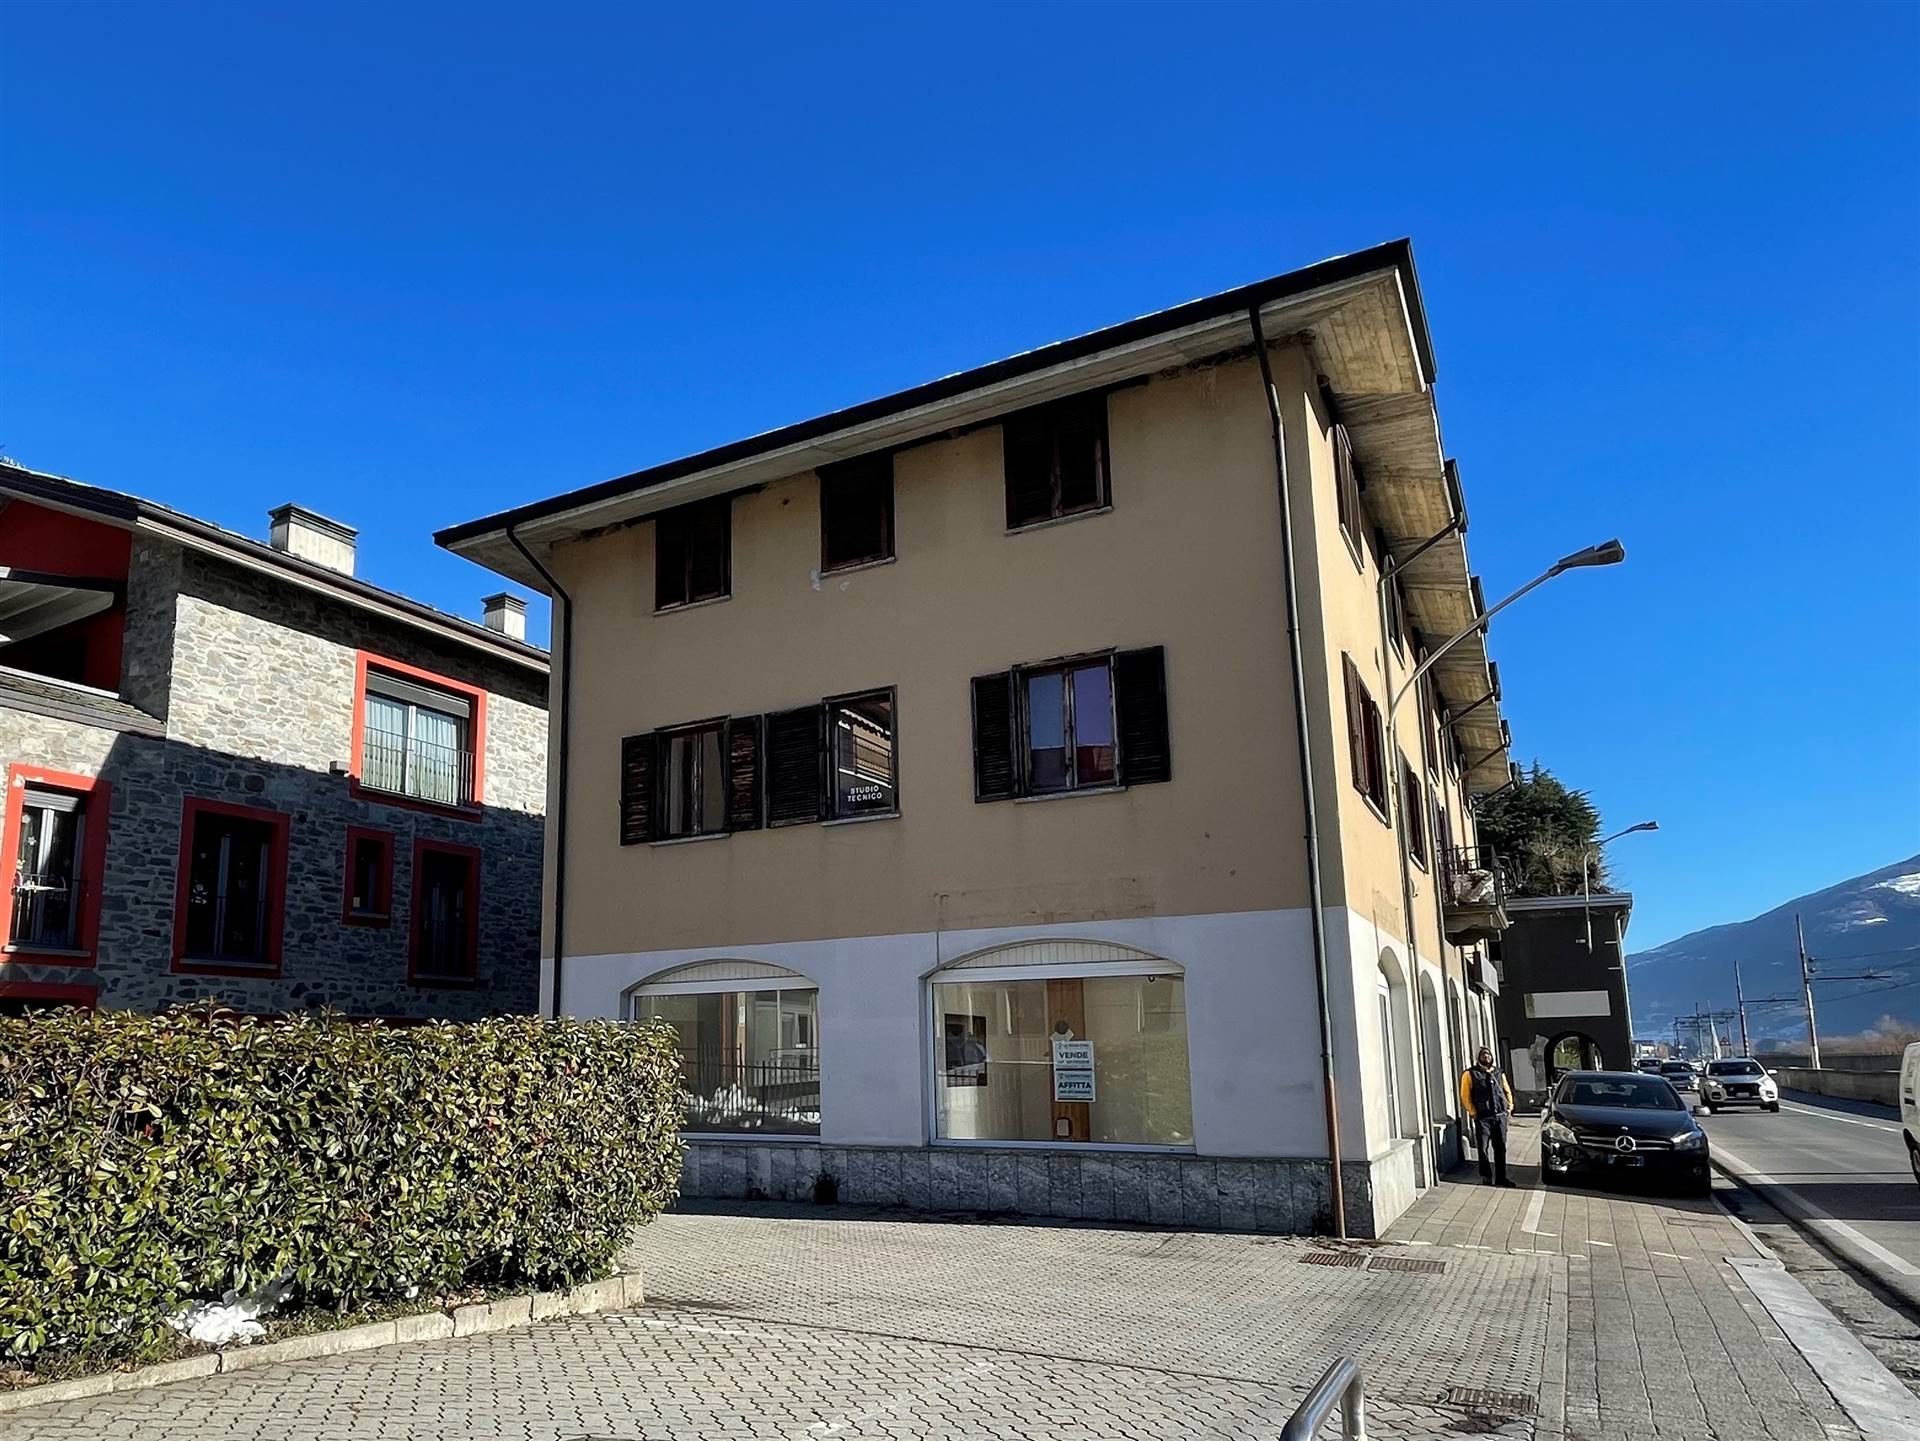 Negozio / Locale in vendita a Berbenno di Valtellina, 3 locali, zona Pietro Berbenno, prezzo € 67.000 | PortaleAgenzieImmobiliari.it